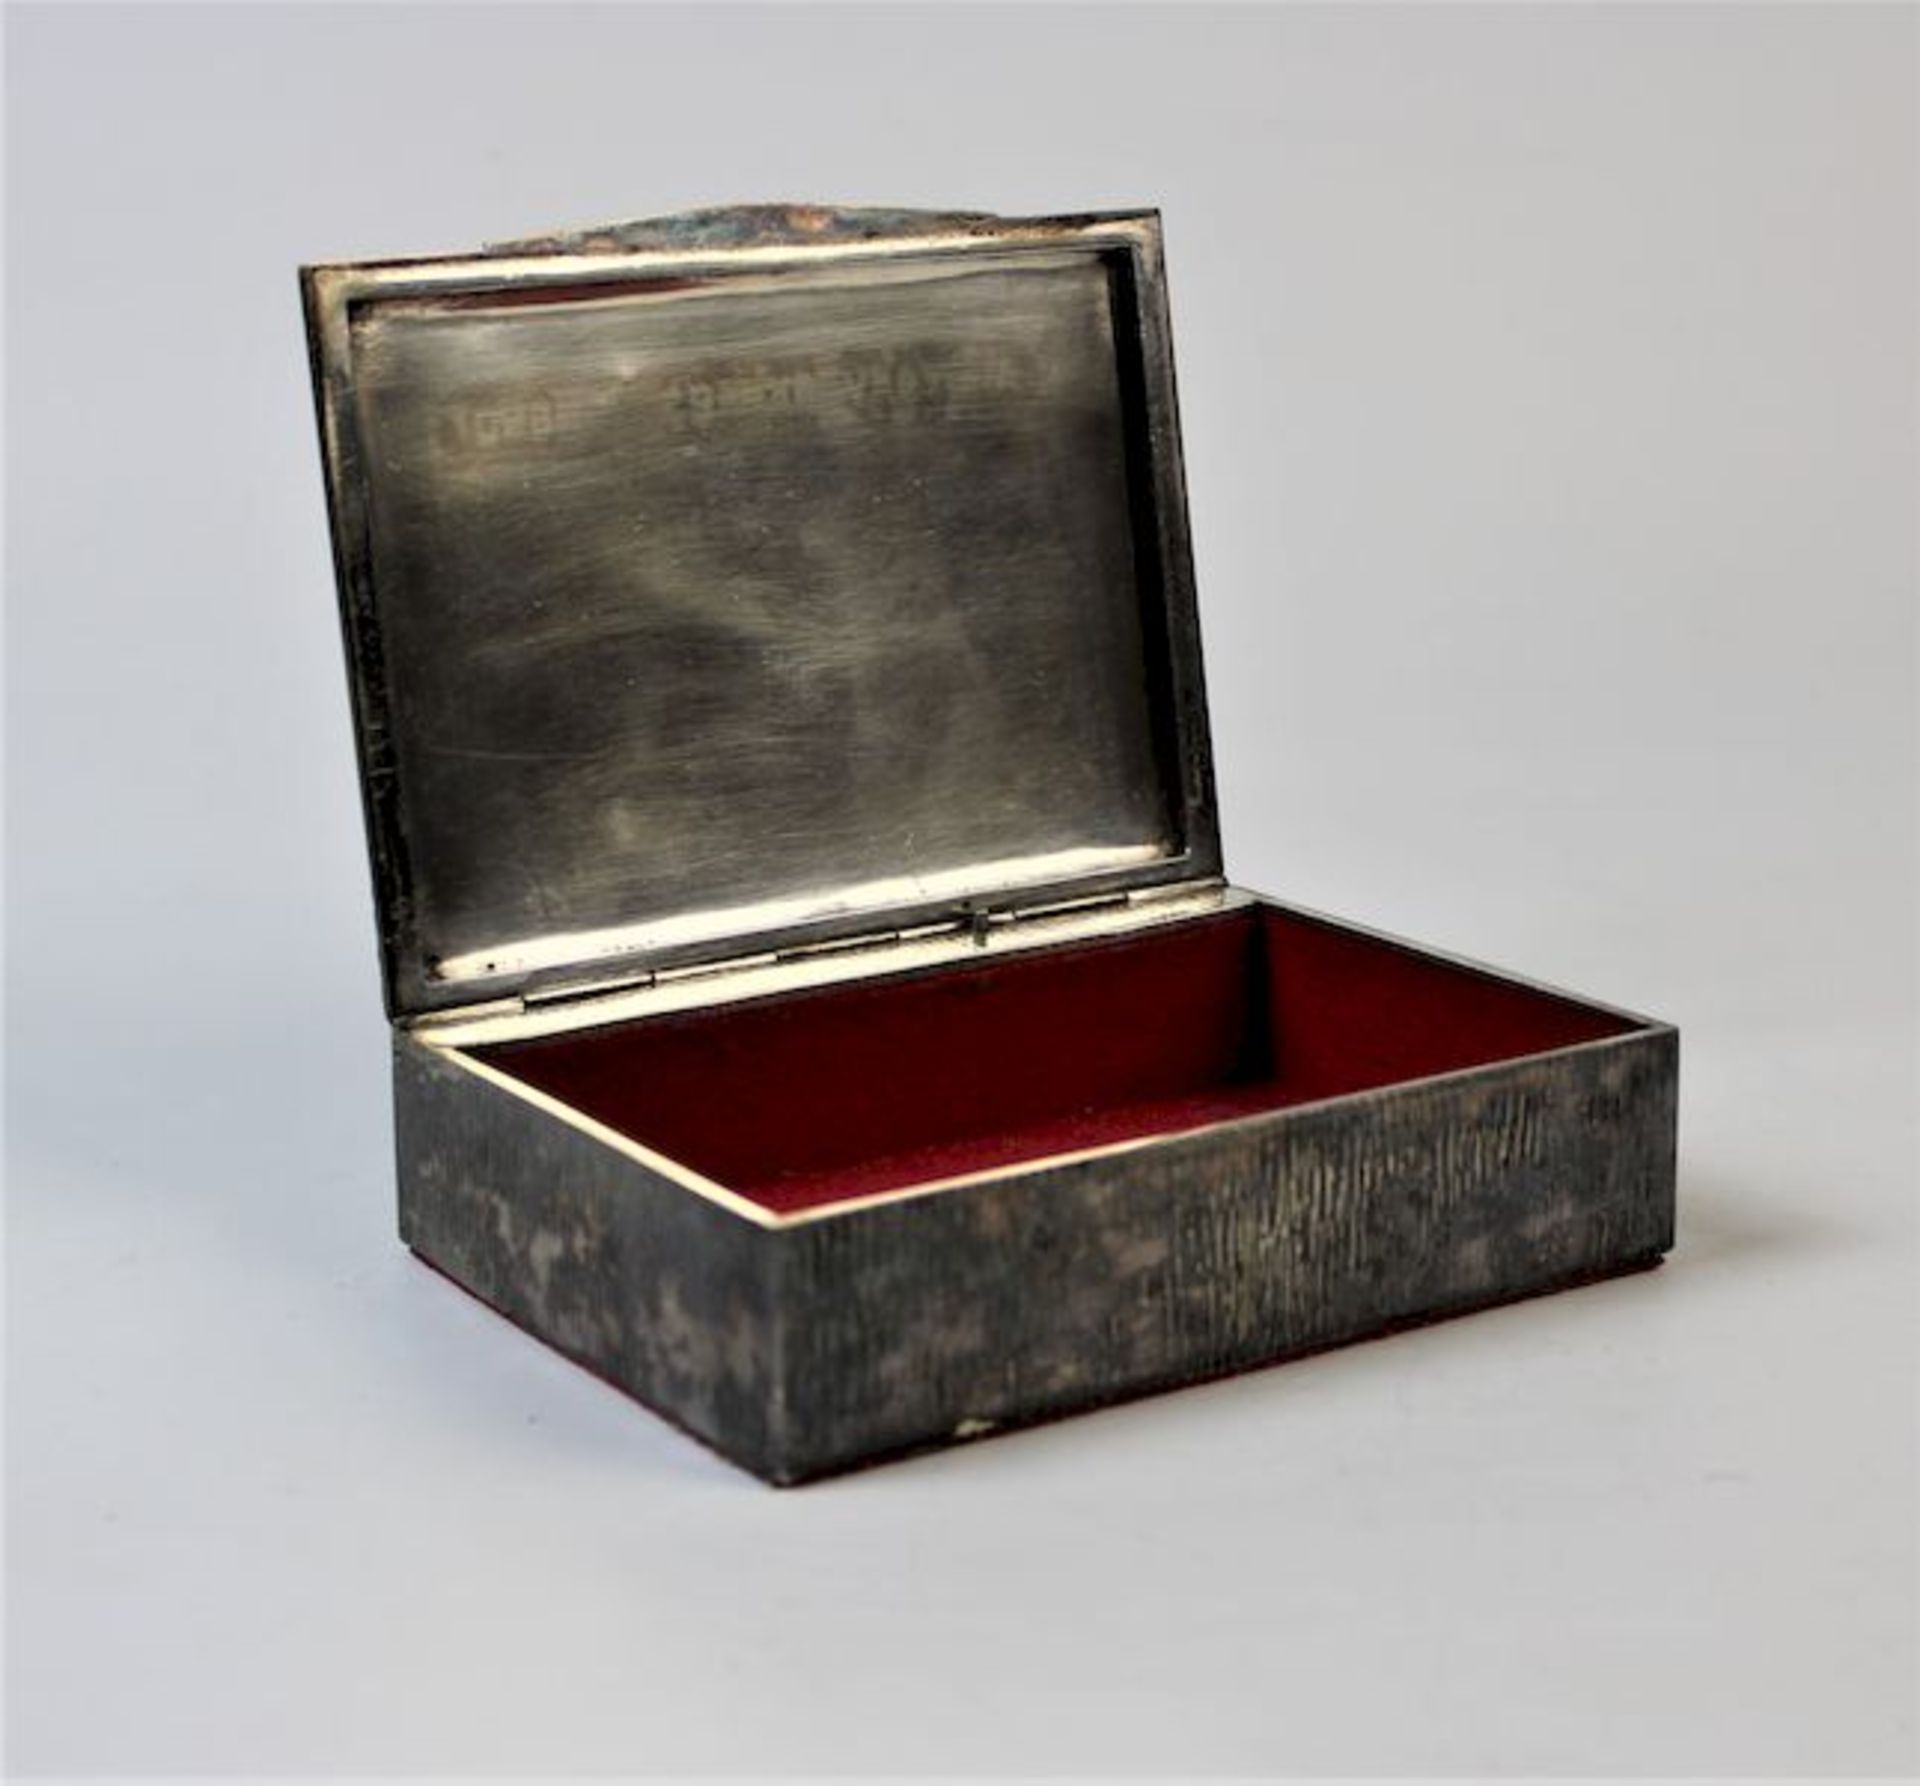 Alpaka Spieluhr der Firma Reuge STE Croix, SchweizSpieluhr intakt Maße: ca. 11,5 cm x 15 cm x 4 cm